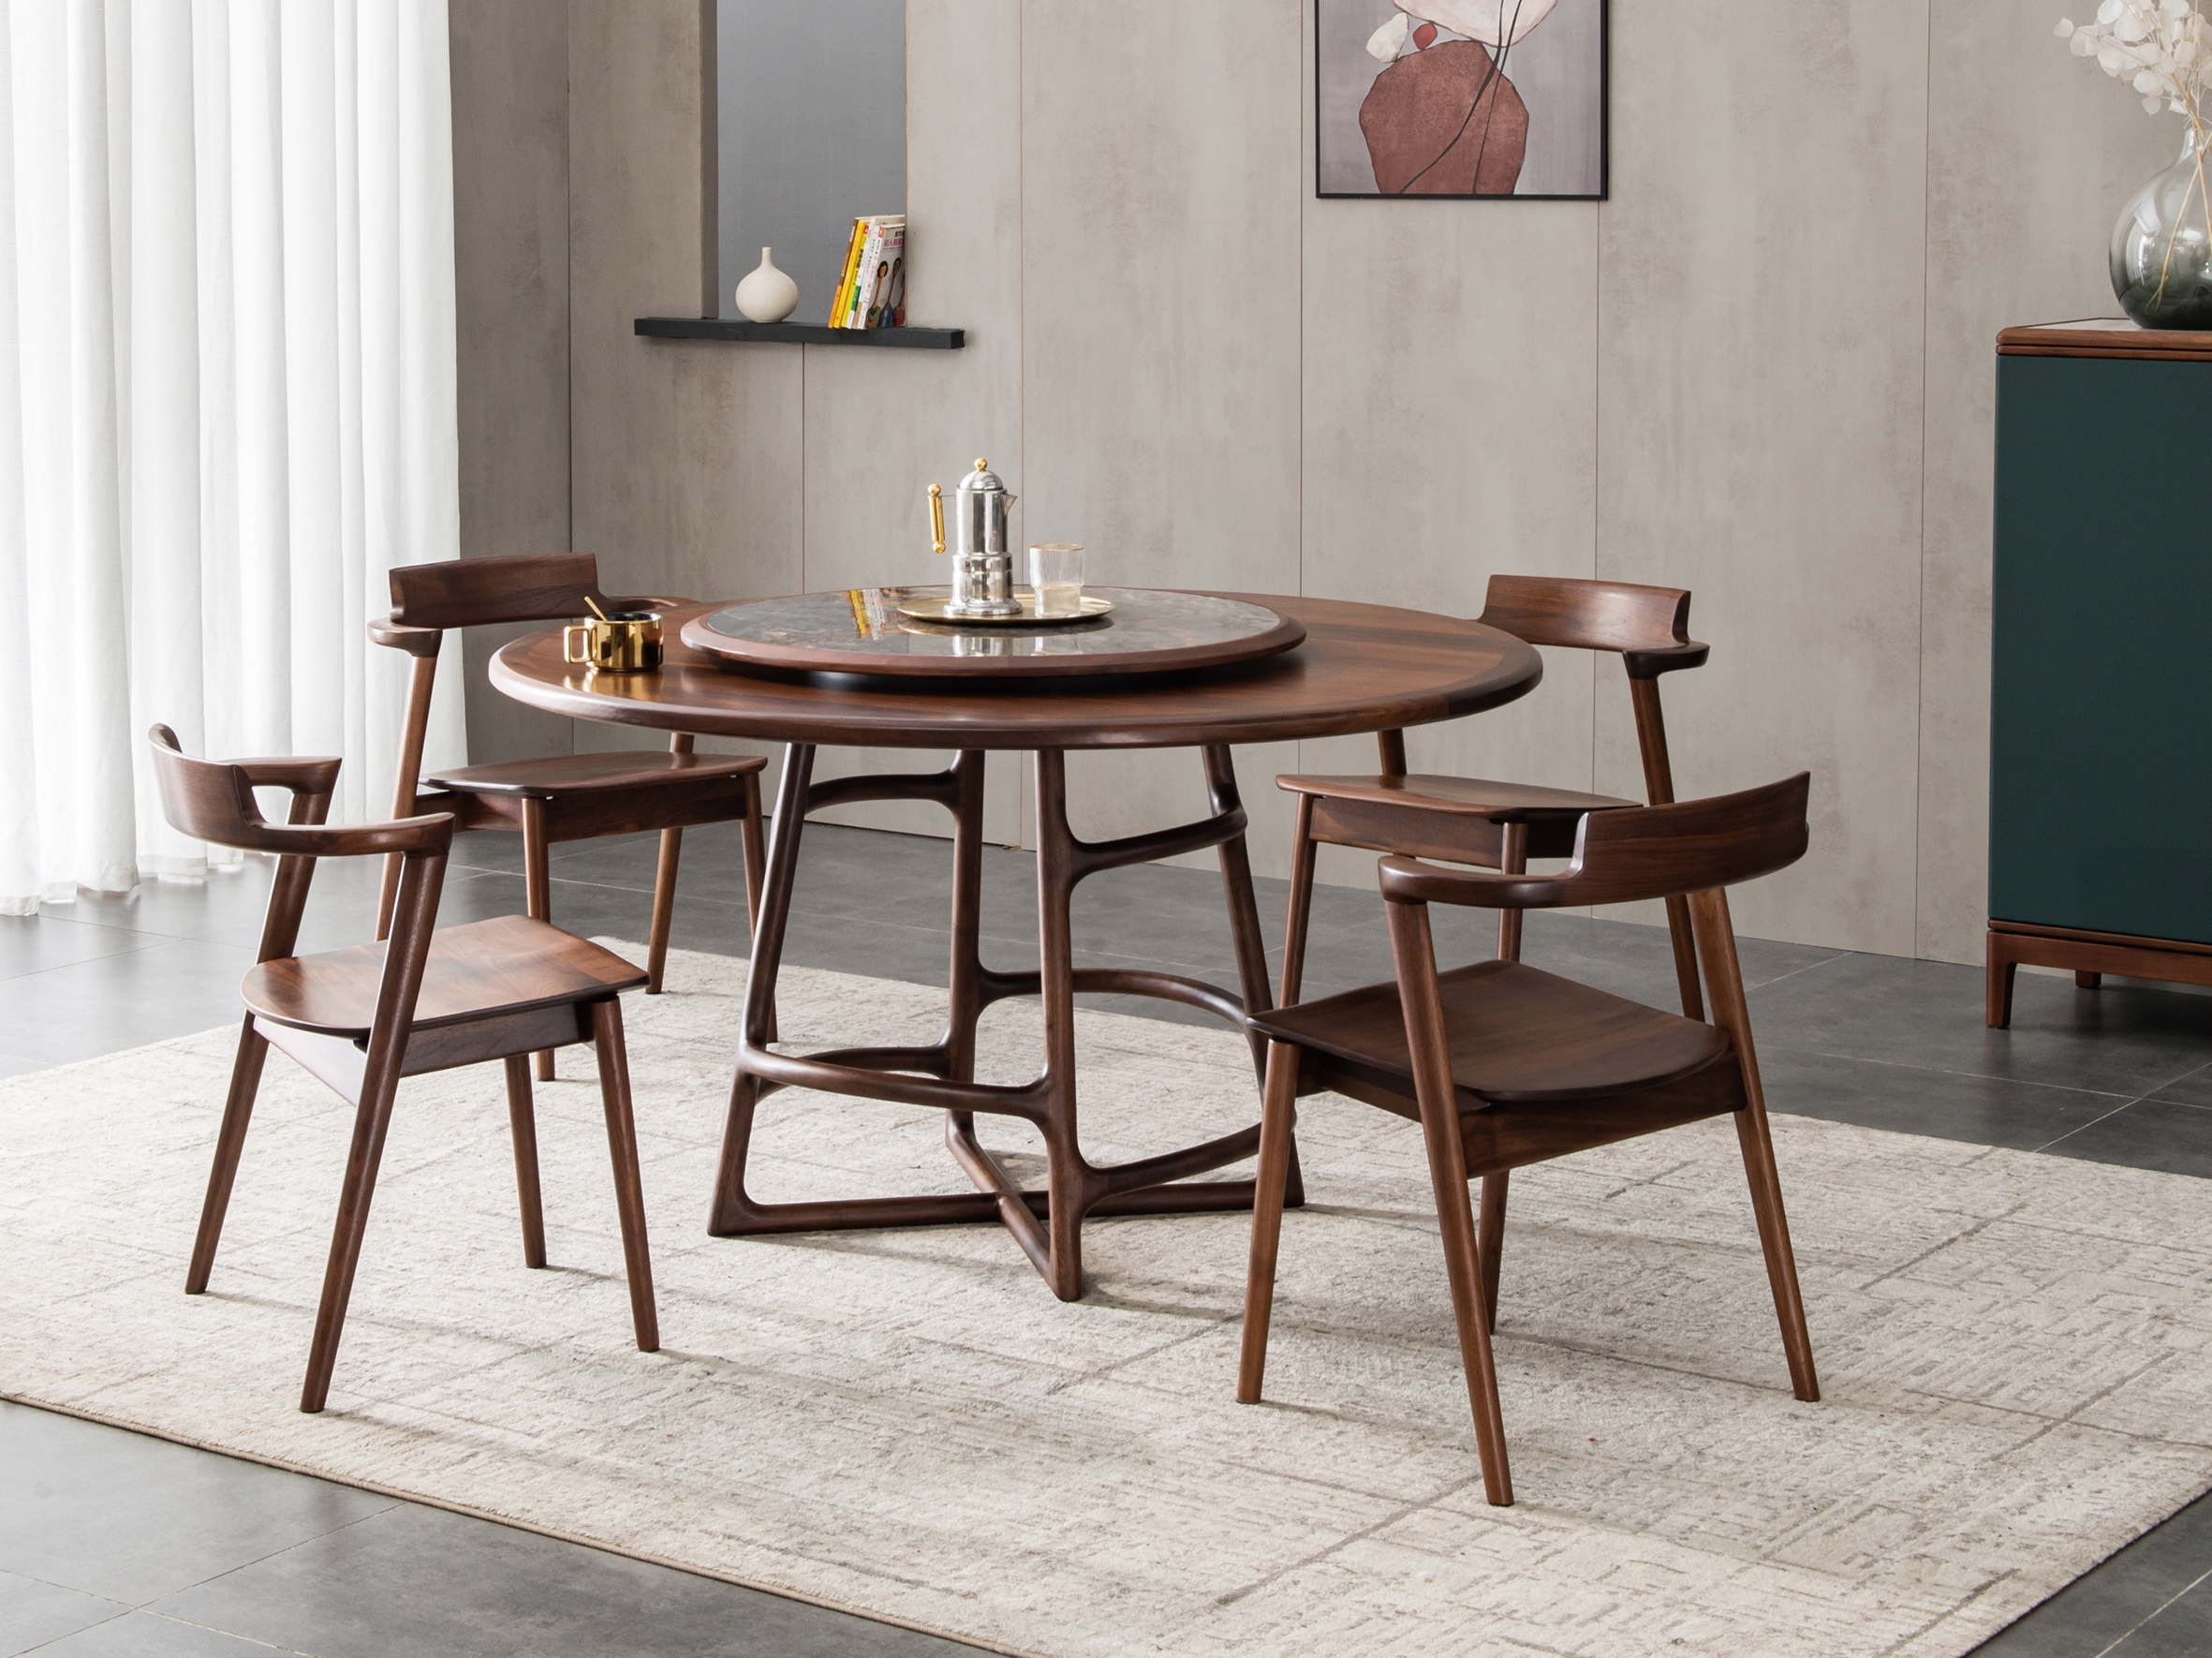 木质感家具·工厂直营店意式极简餐厅餐桌椅102